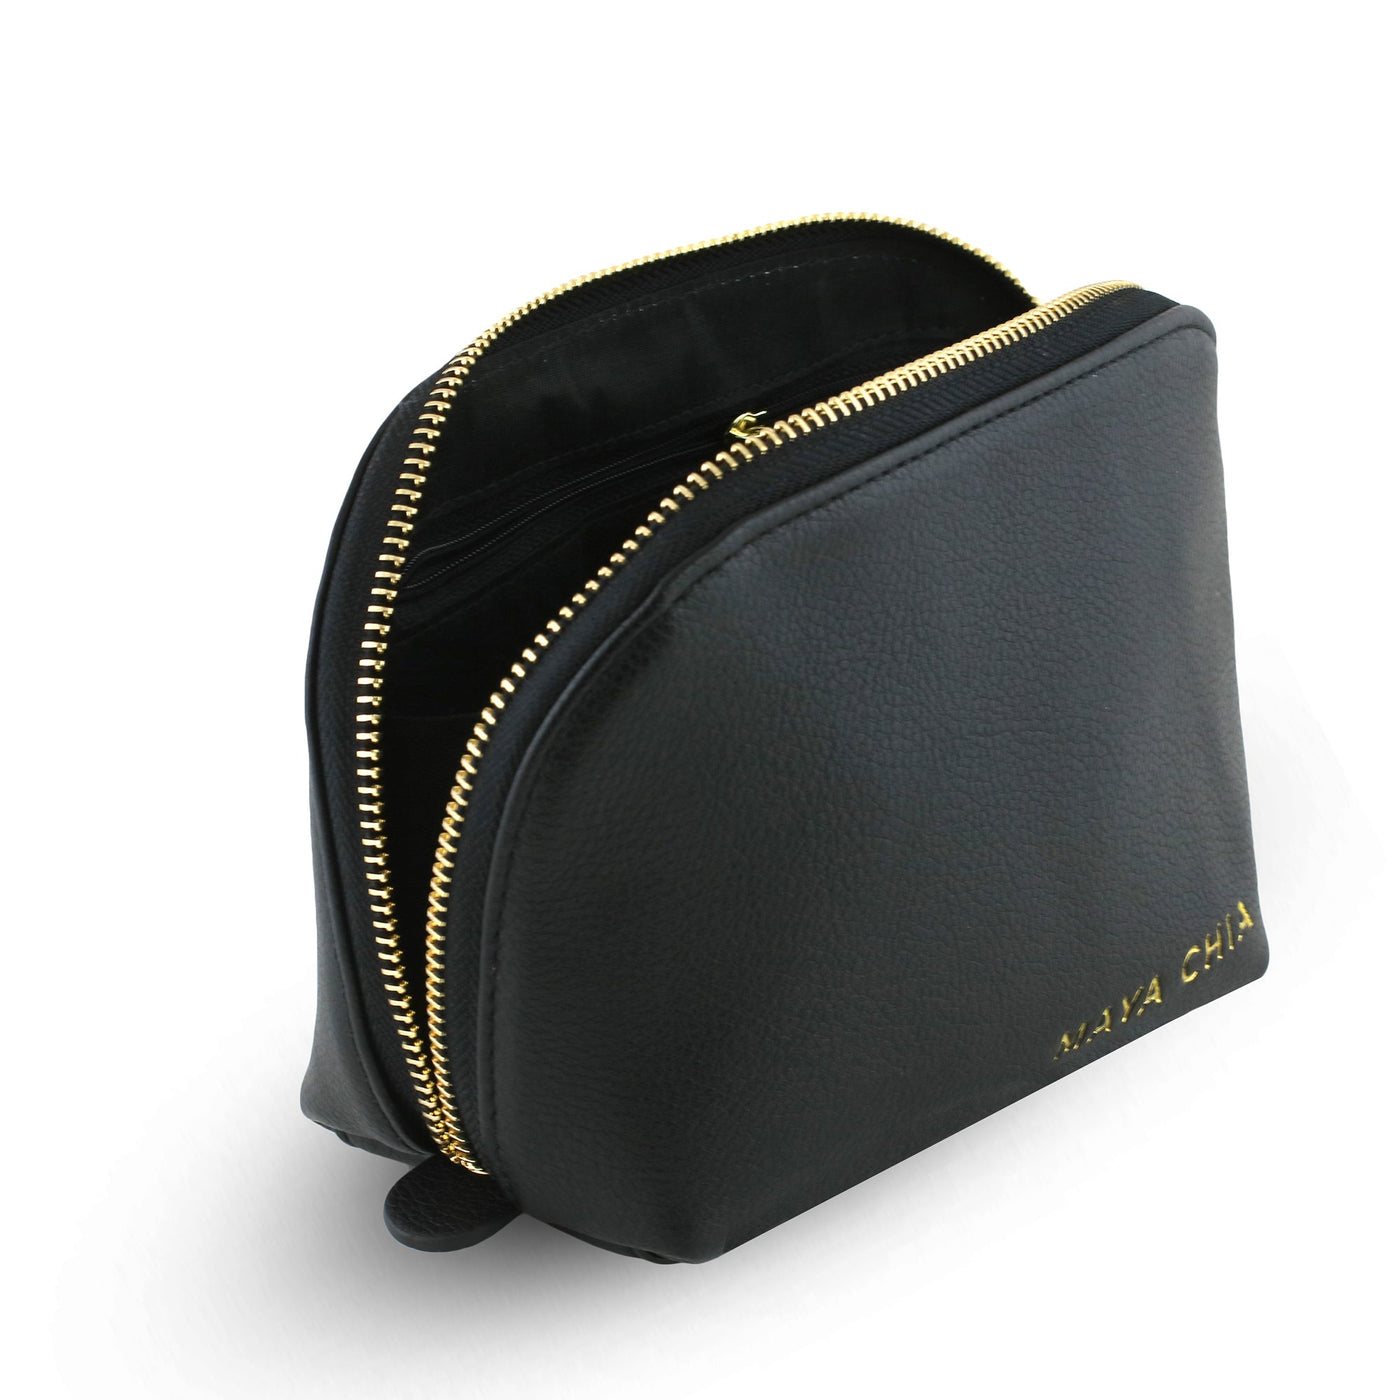 Luxe Vegan Leather Cosmetic Bag - Maya Chia